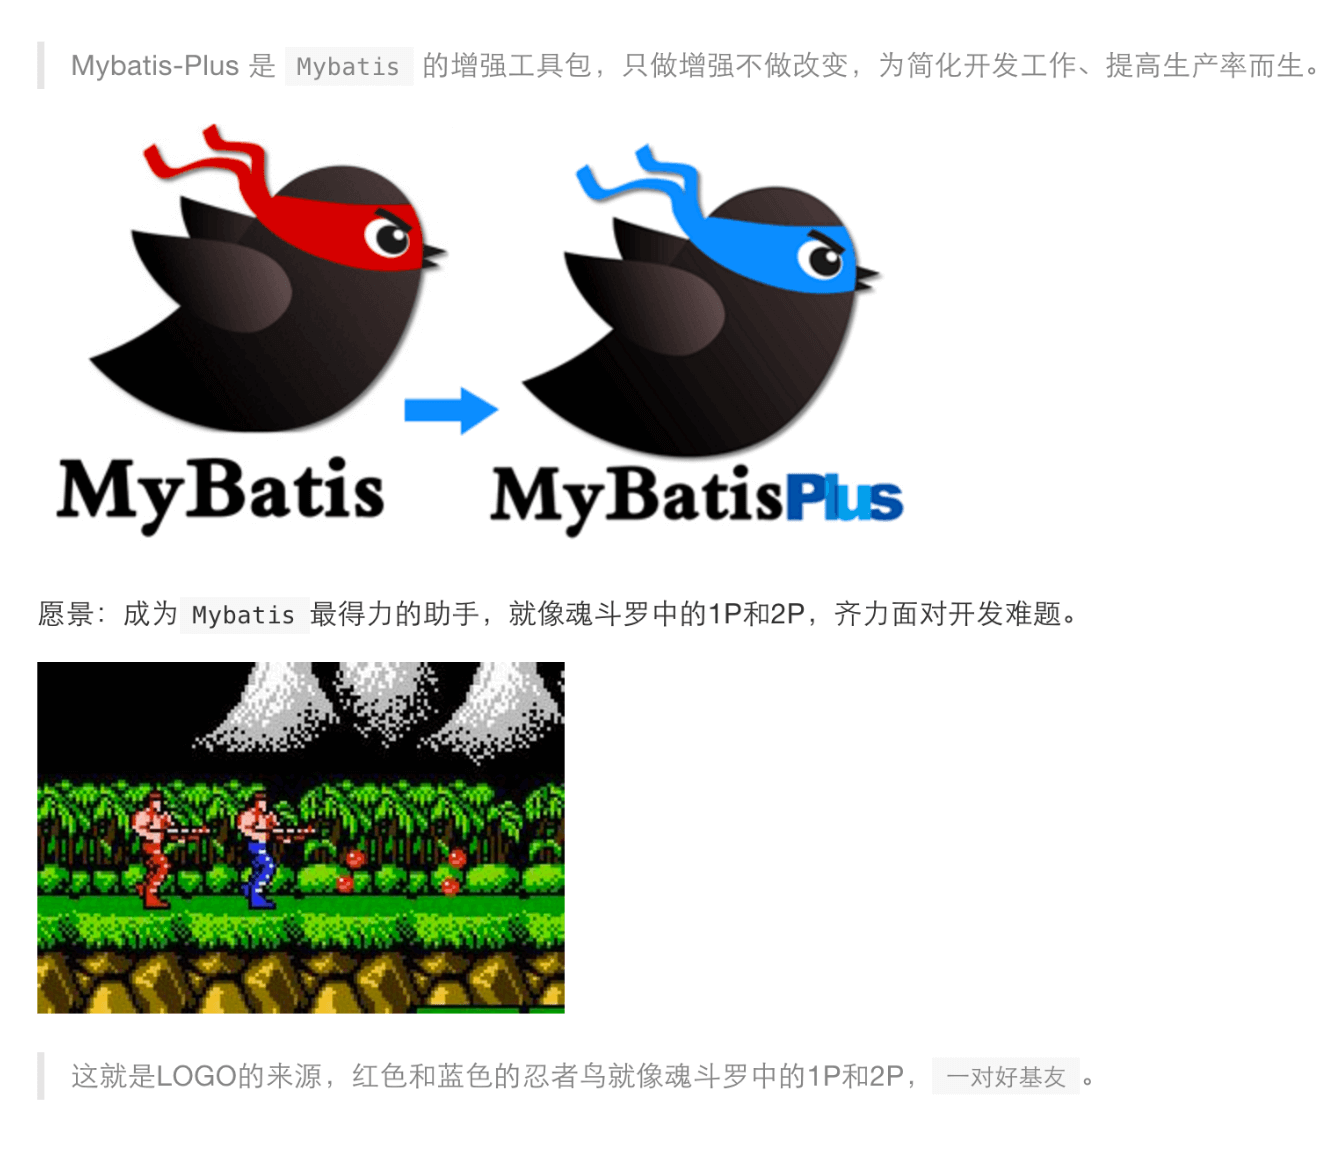 mybatis-plus首页、文档和下载 - mybatis 增强工